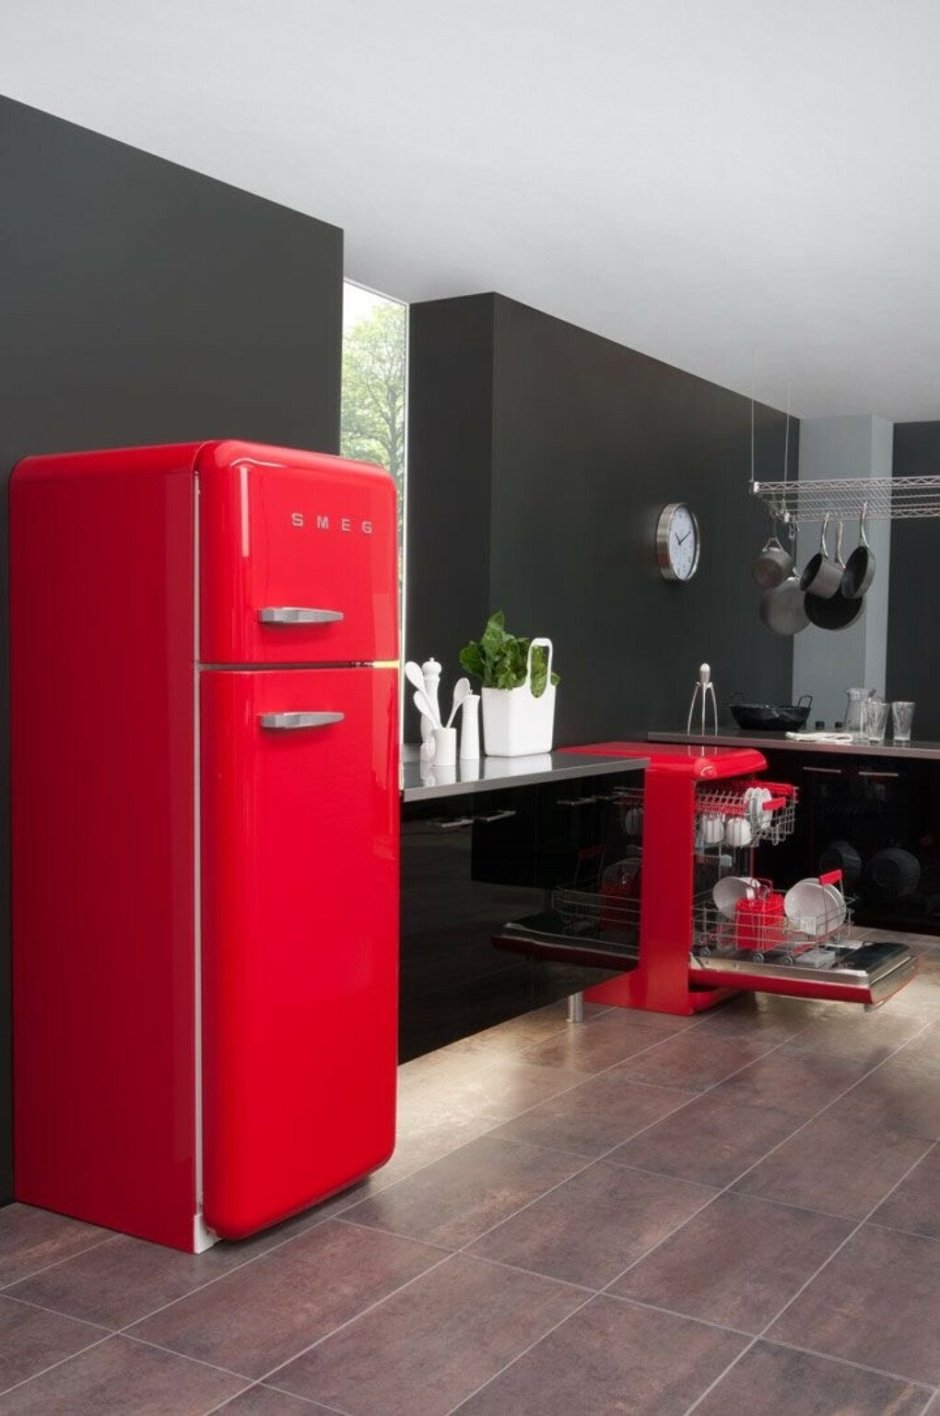 Холодильник Смег ретро красный в интерьере